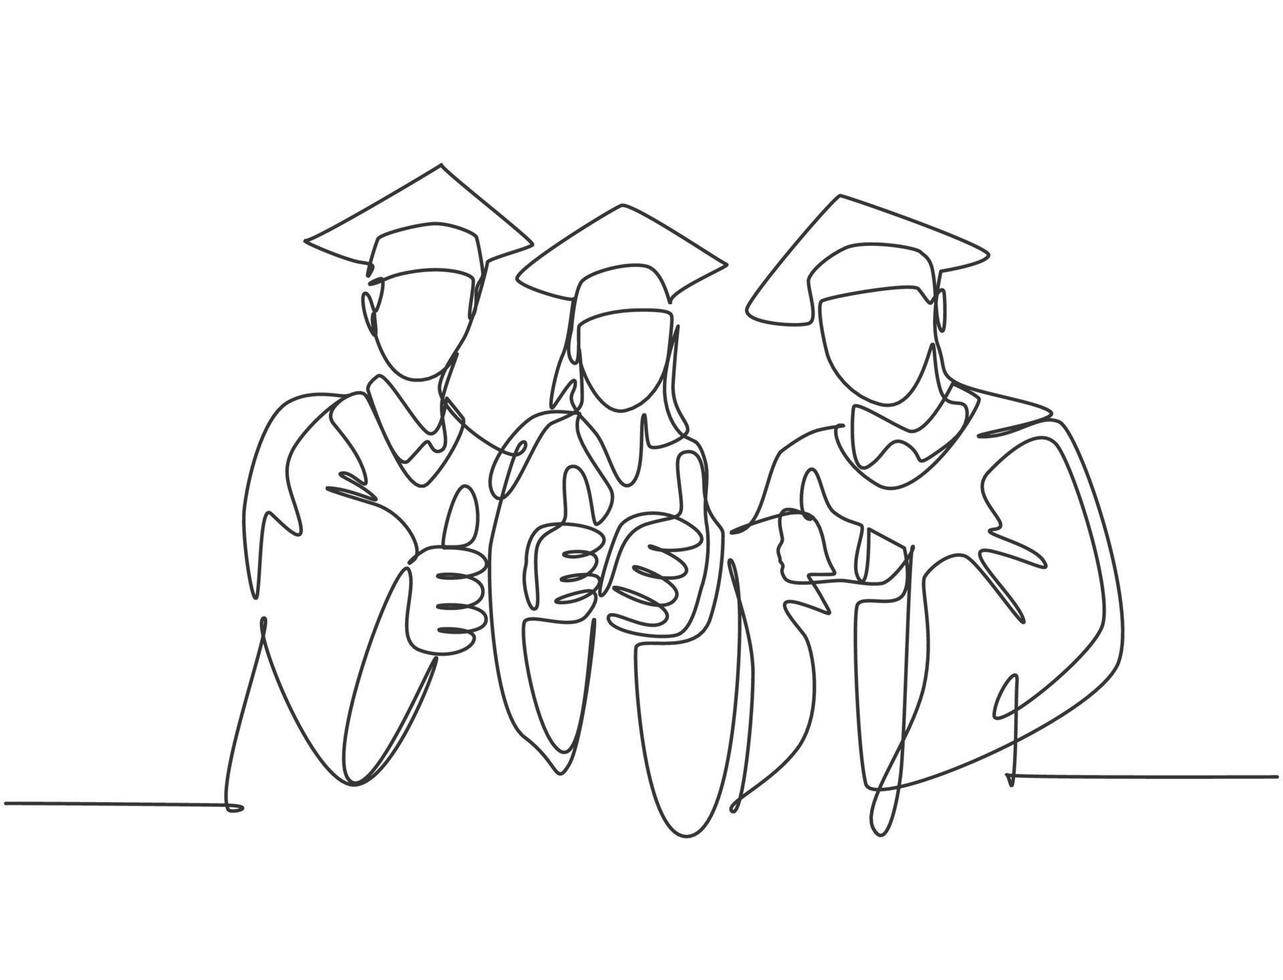 un disegno a tratteggio di giovani studenti universitari laureati felici che indossano un abito da laurea e che danno il gesto dei pollici. concetto di laurea di istruzione. illustrazione vettoriale grafica di disegno di disegno di linea continua